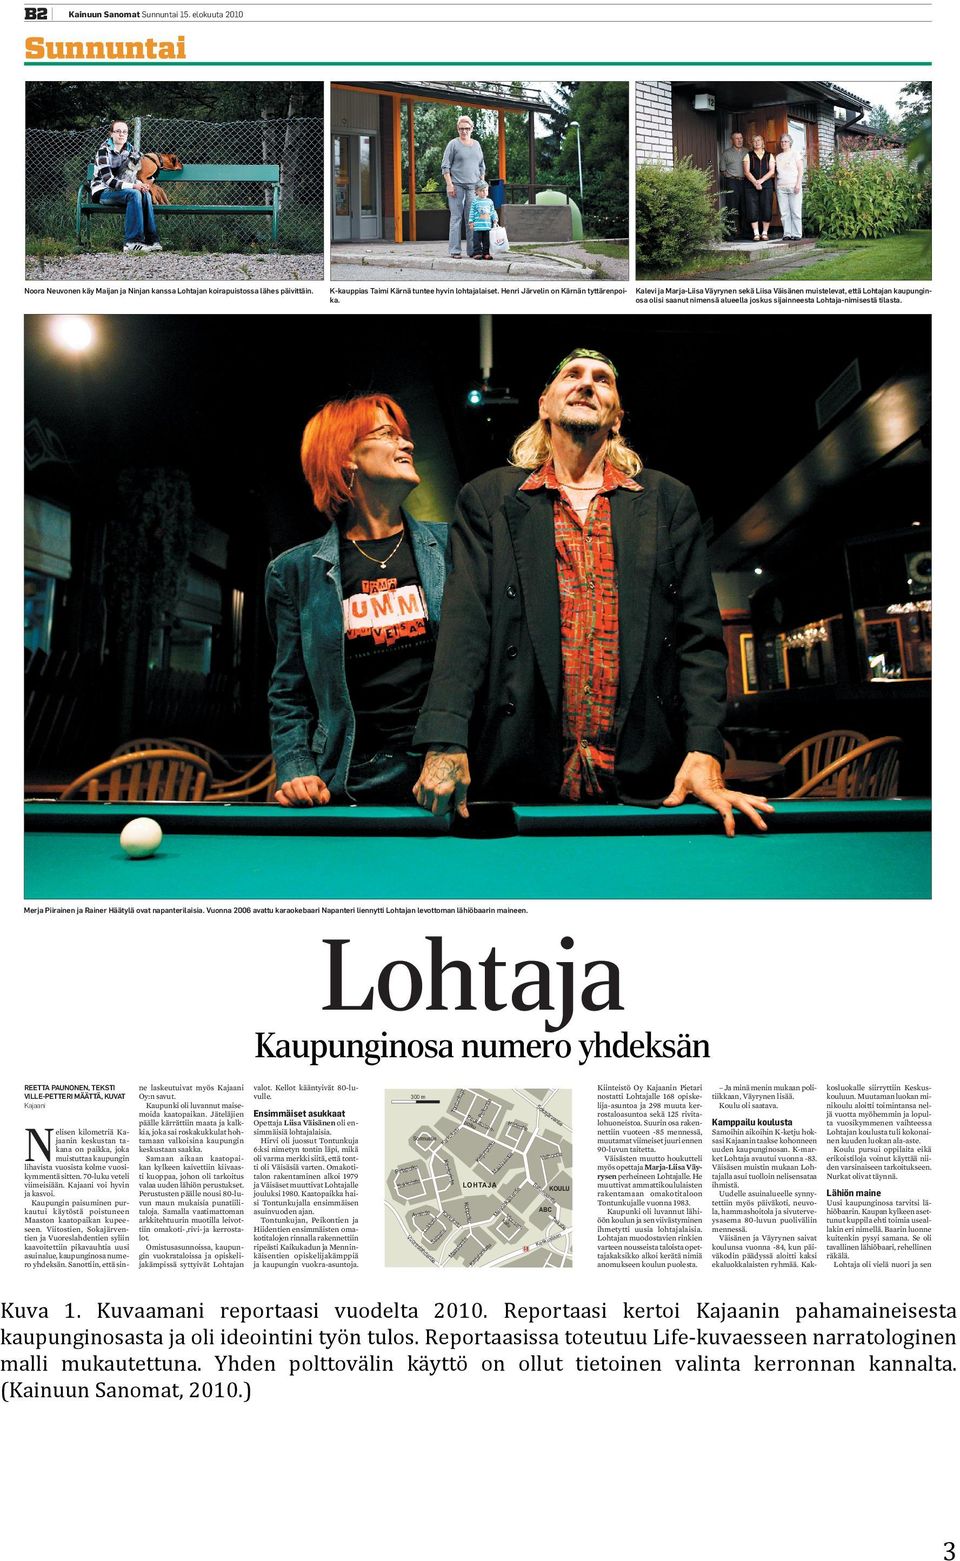 Kalevi ja Marja-Liisa Väyrynen sekä Liisa Väisänen muistelevat, että Lohtajan kaupunginosa olisi saanut nimensä alueella joskus sijainneesta Lohtaja-nimisestä tilasta.